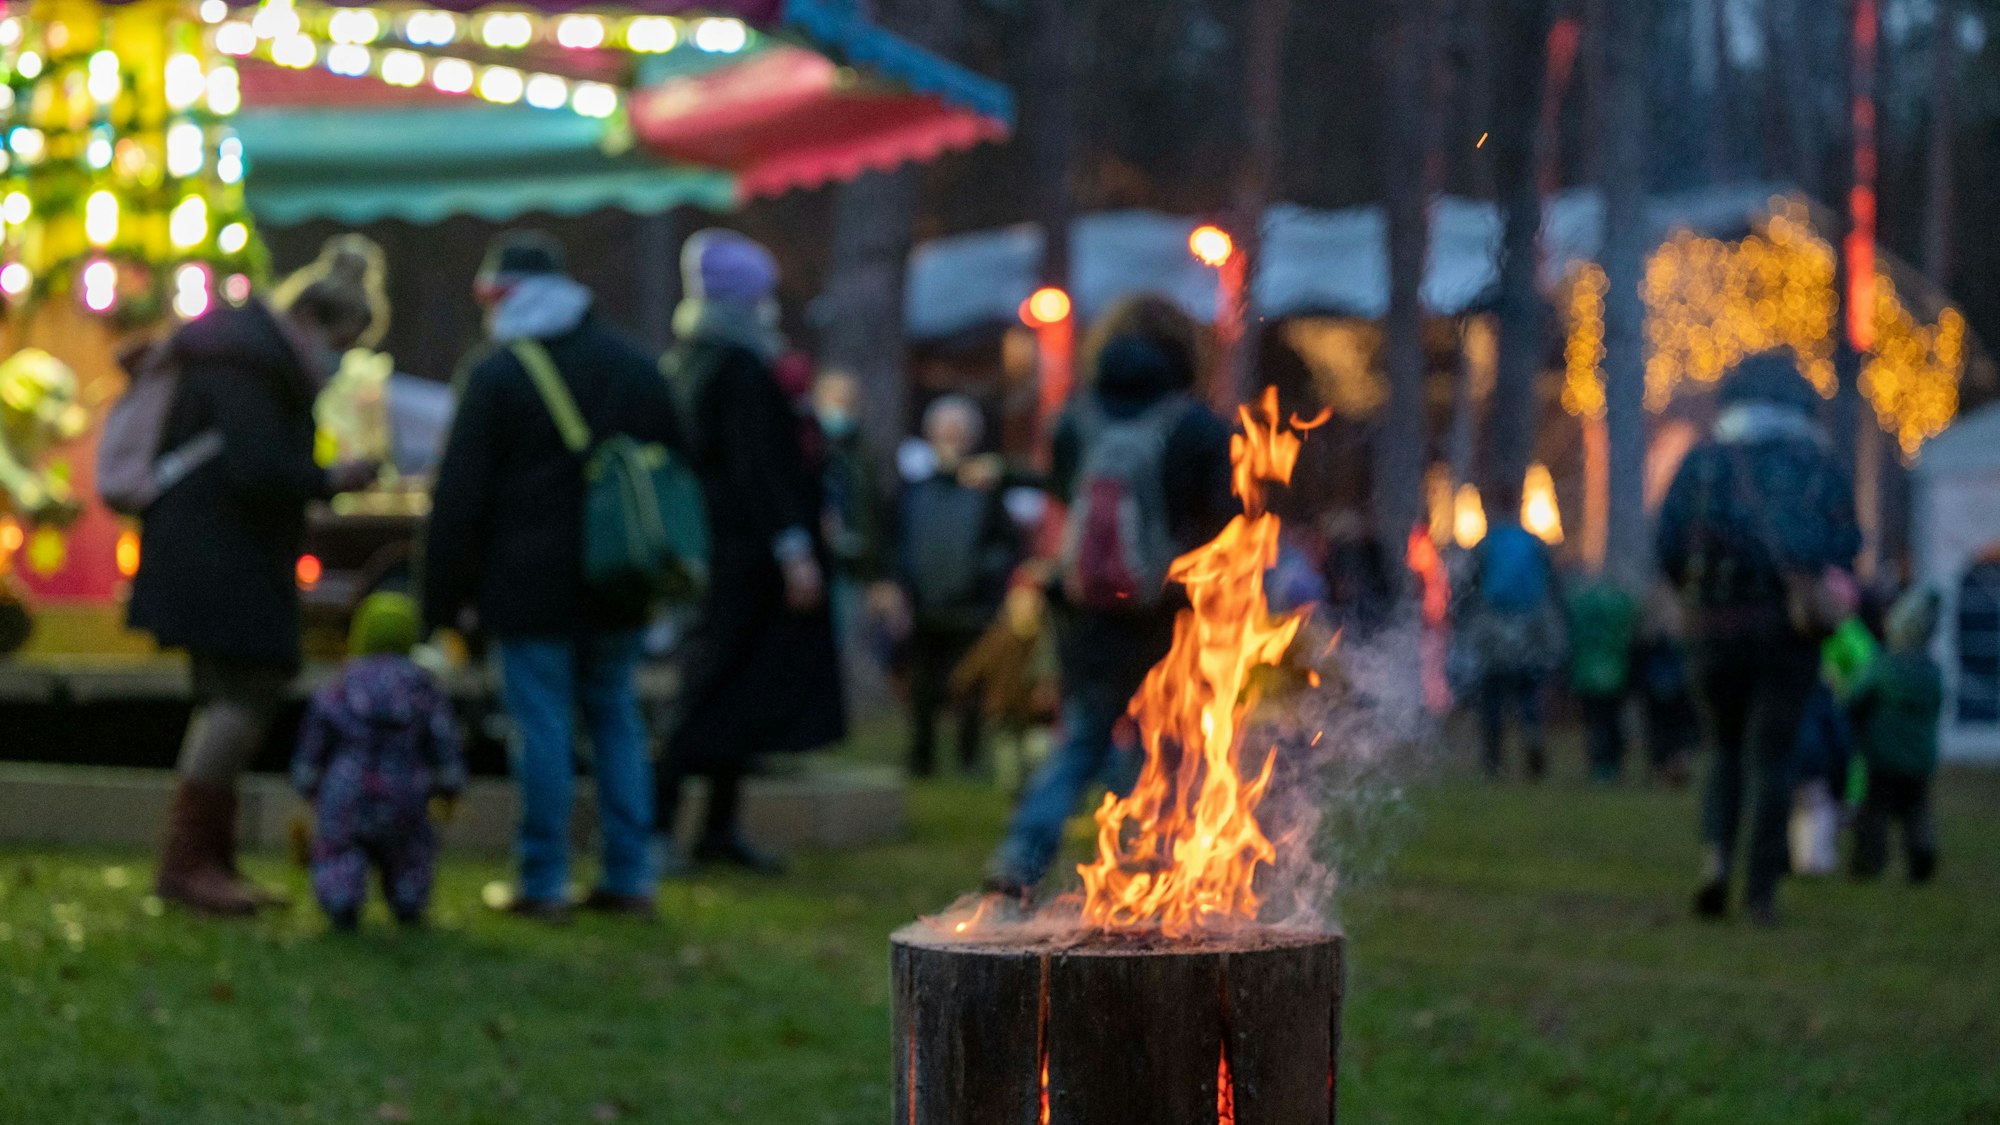 Schwedenfeuer auf dem Weihnachtsmarkt im Waldbad in Dünnwald